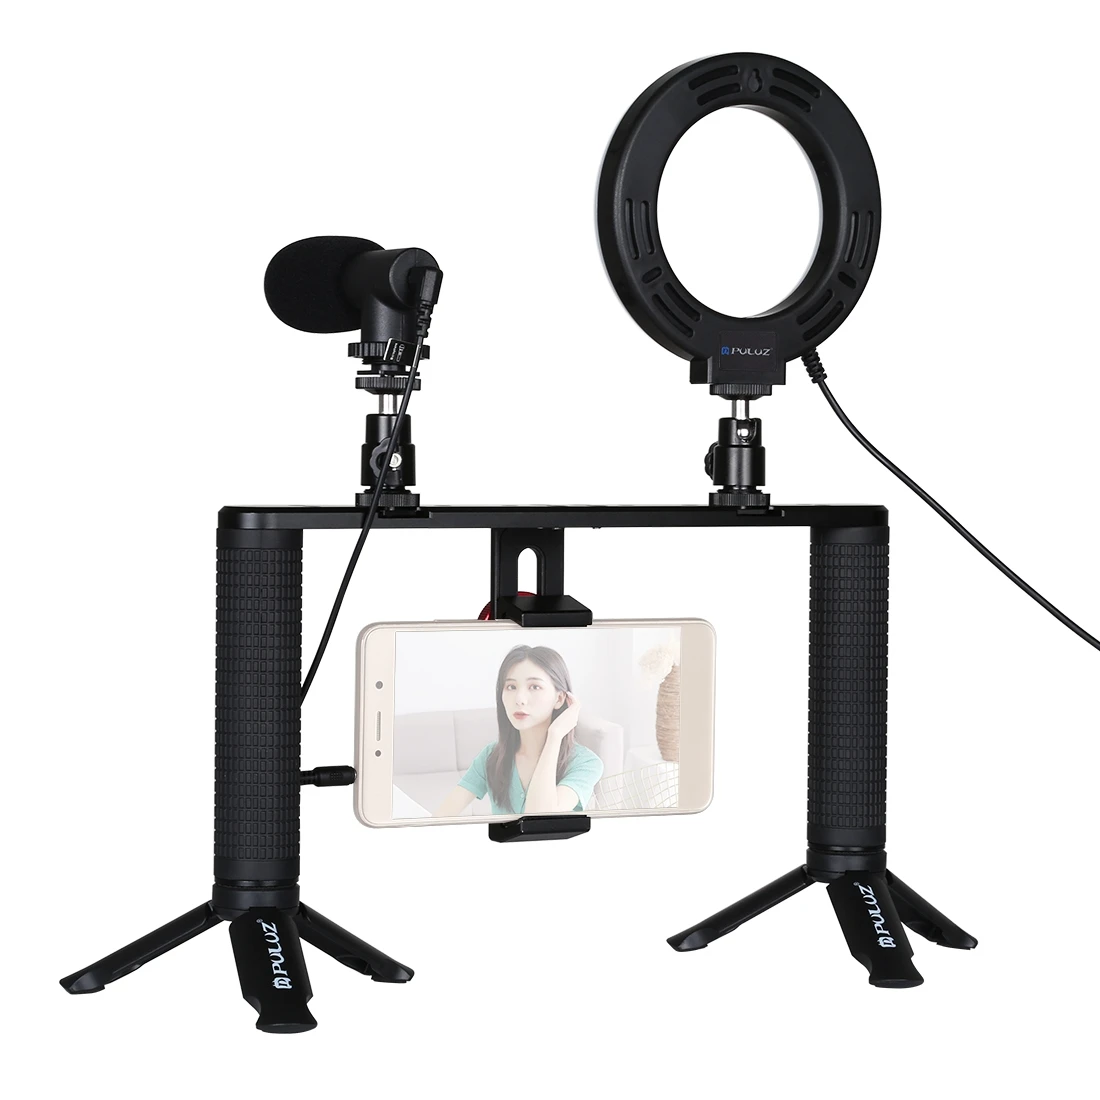 

Hot Sale PULUZ 4 in 1 Vlogging Live Broadcast 4.7 inch Ring LED Selfie Light Smartphone Video Rig Handle Stabilizer Bracket Kits